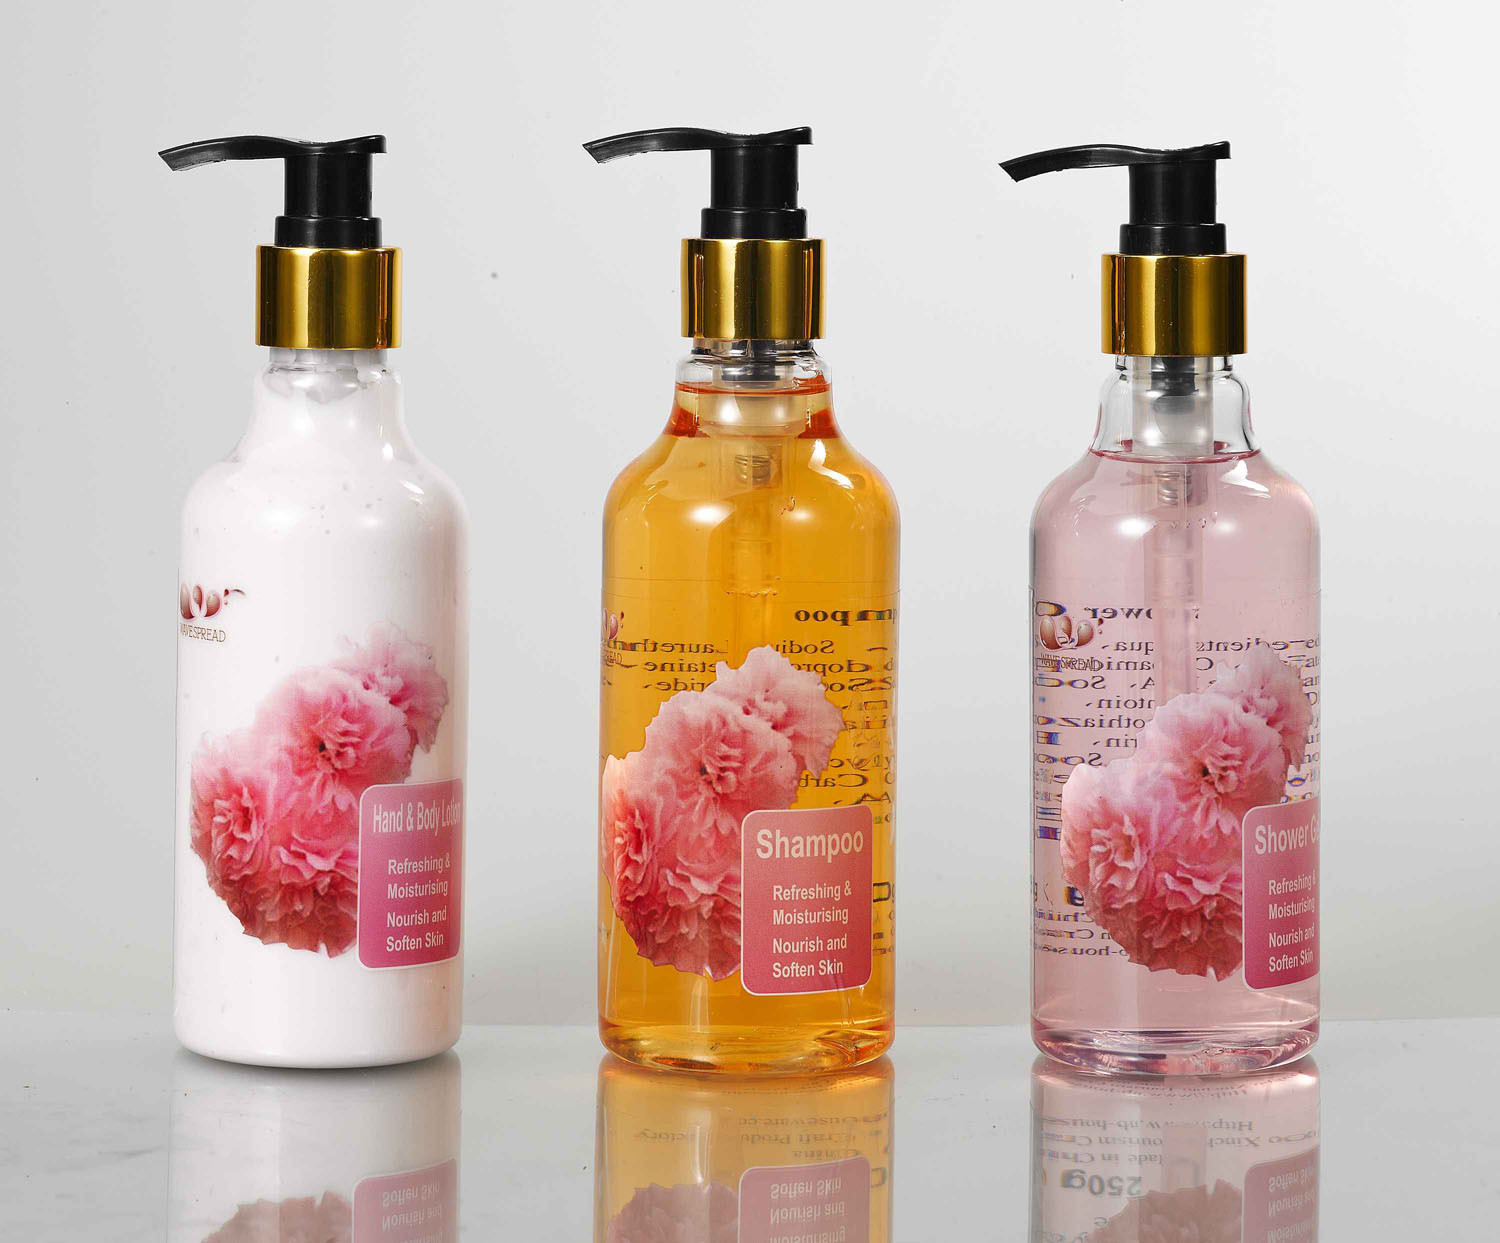 Shampoo Body Lotion & Shower Gel (GL-0800)